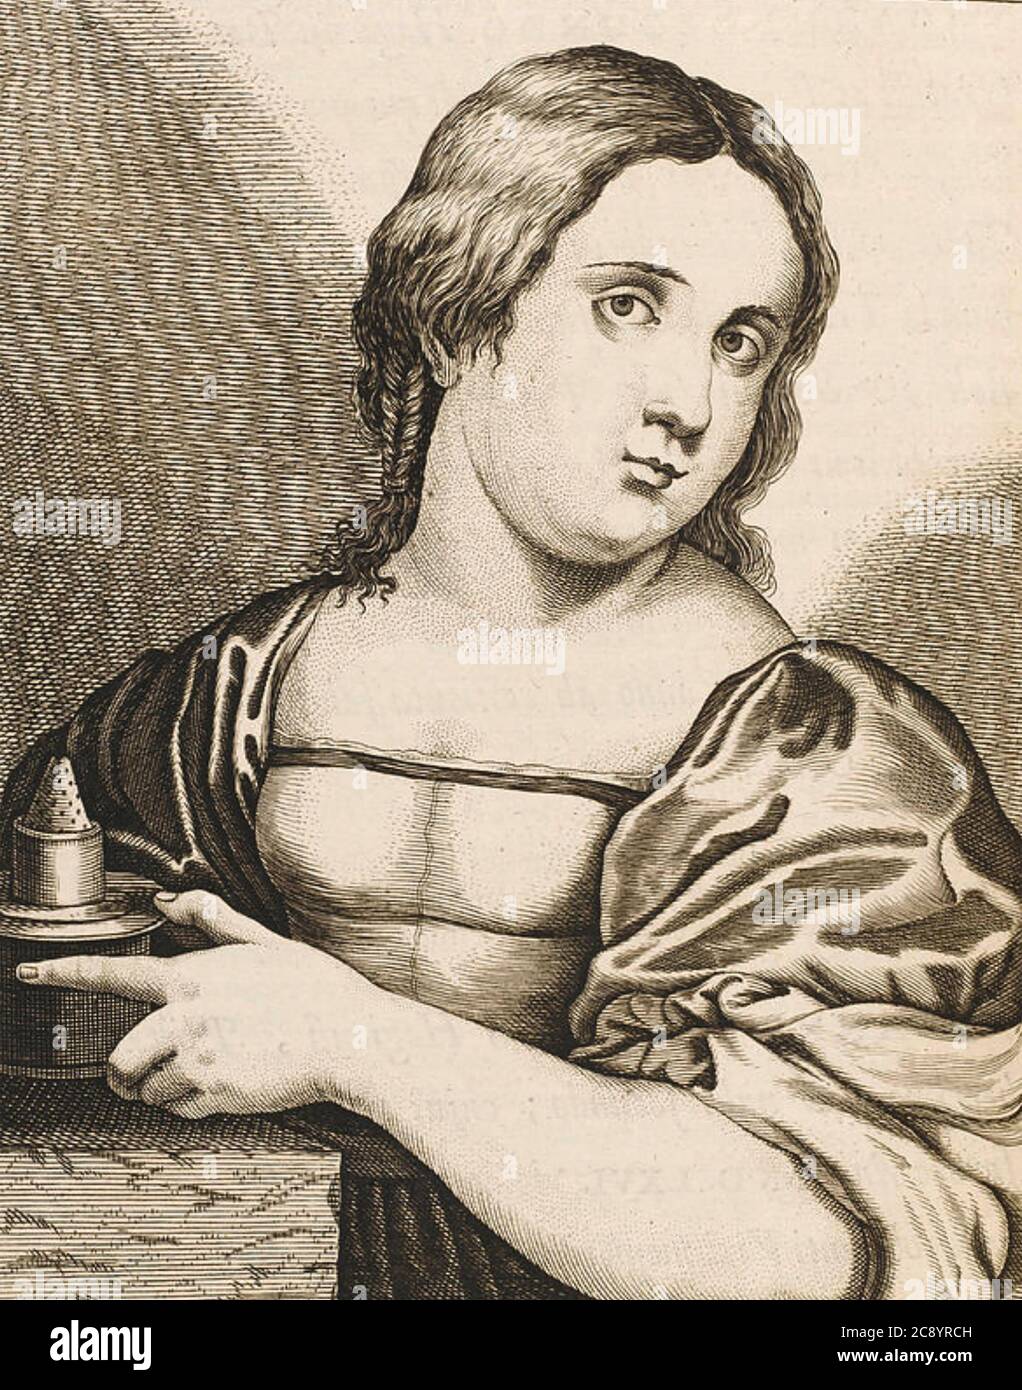 VITTORIA COLONNA (1492-1547) romane et poète italien Banque D'Images